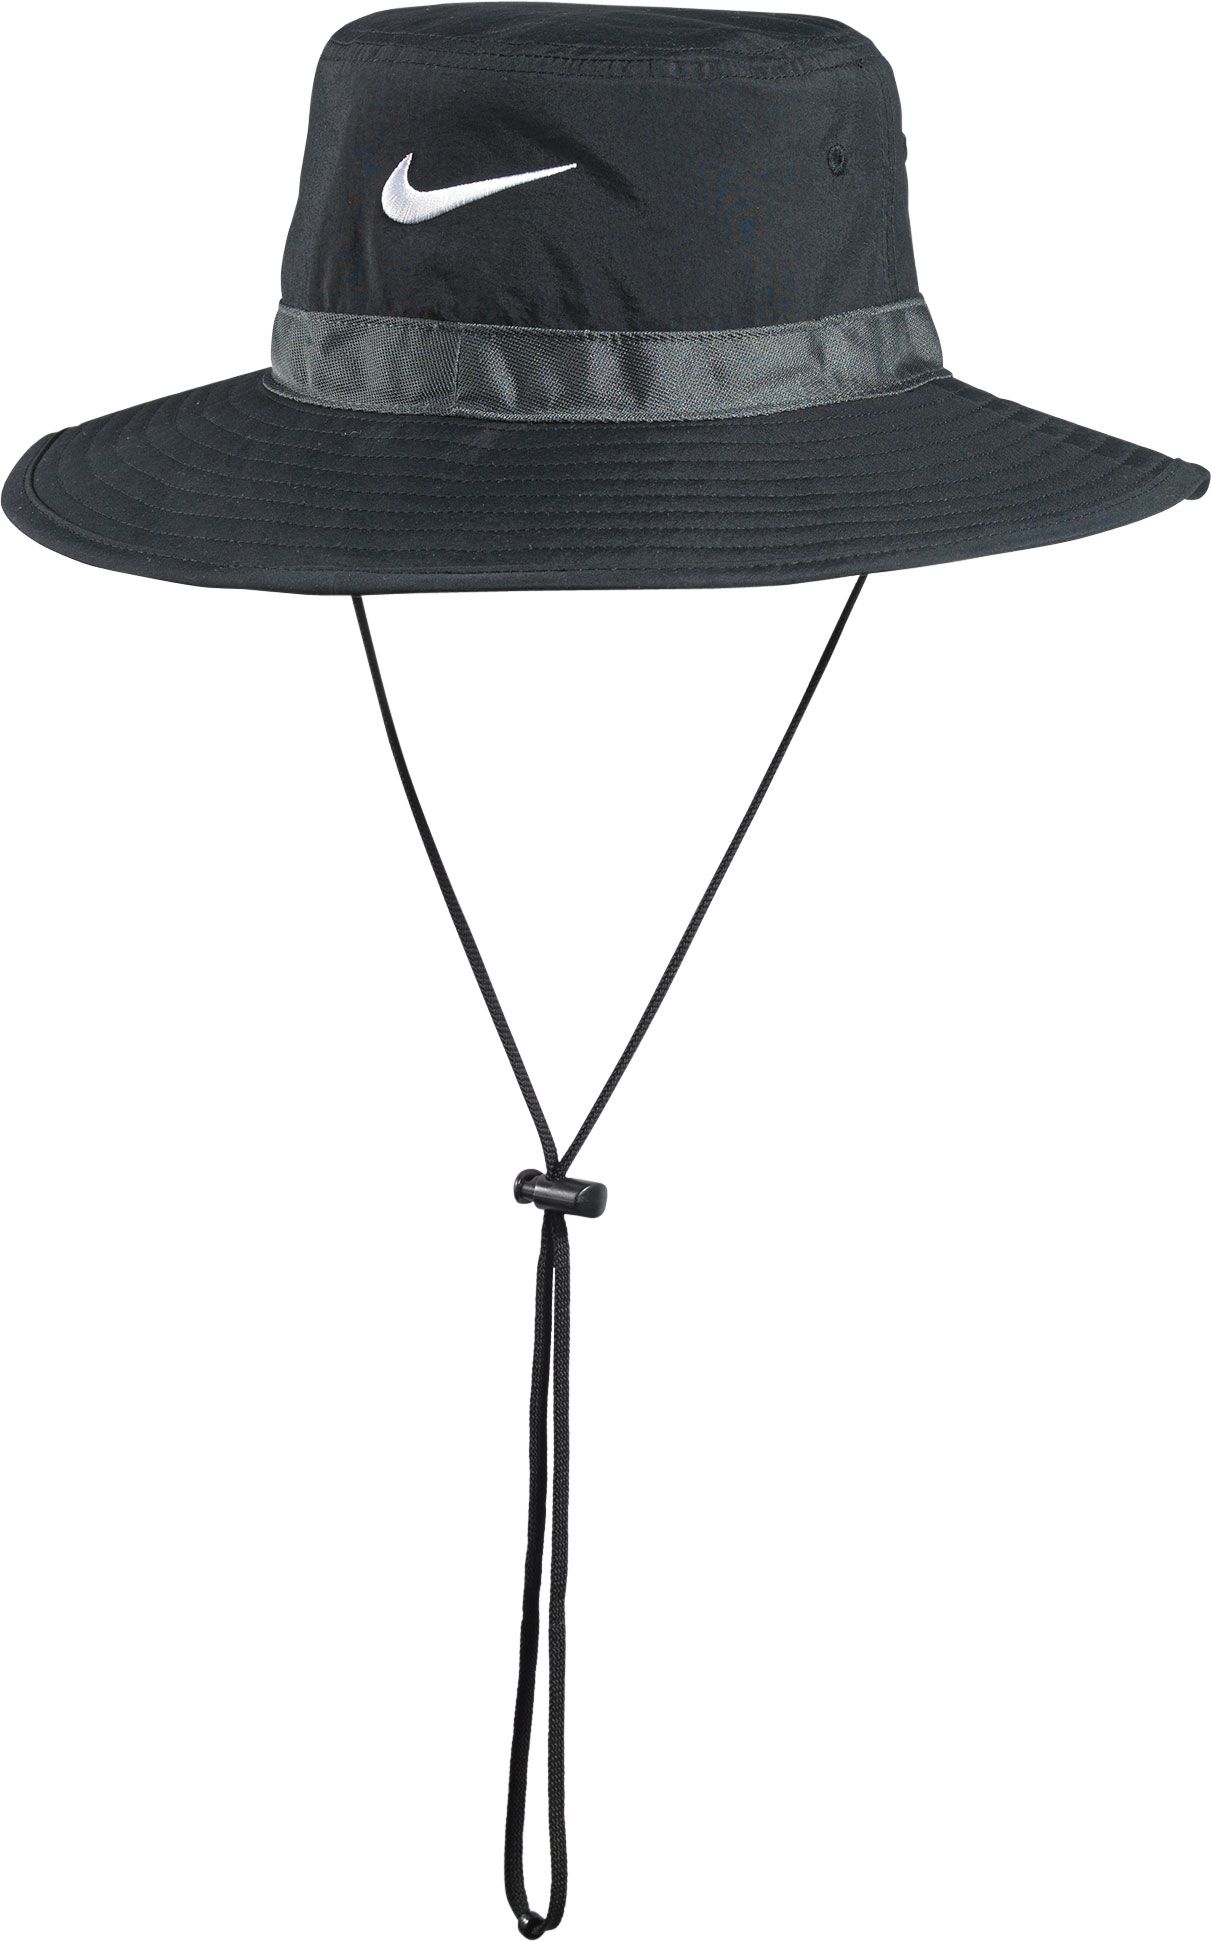 Men's Bucket Hats | Best Price Guarantee at DICK'S